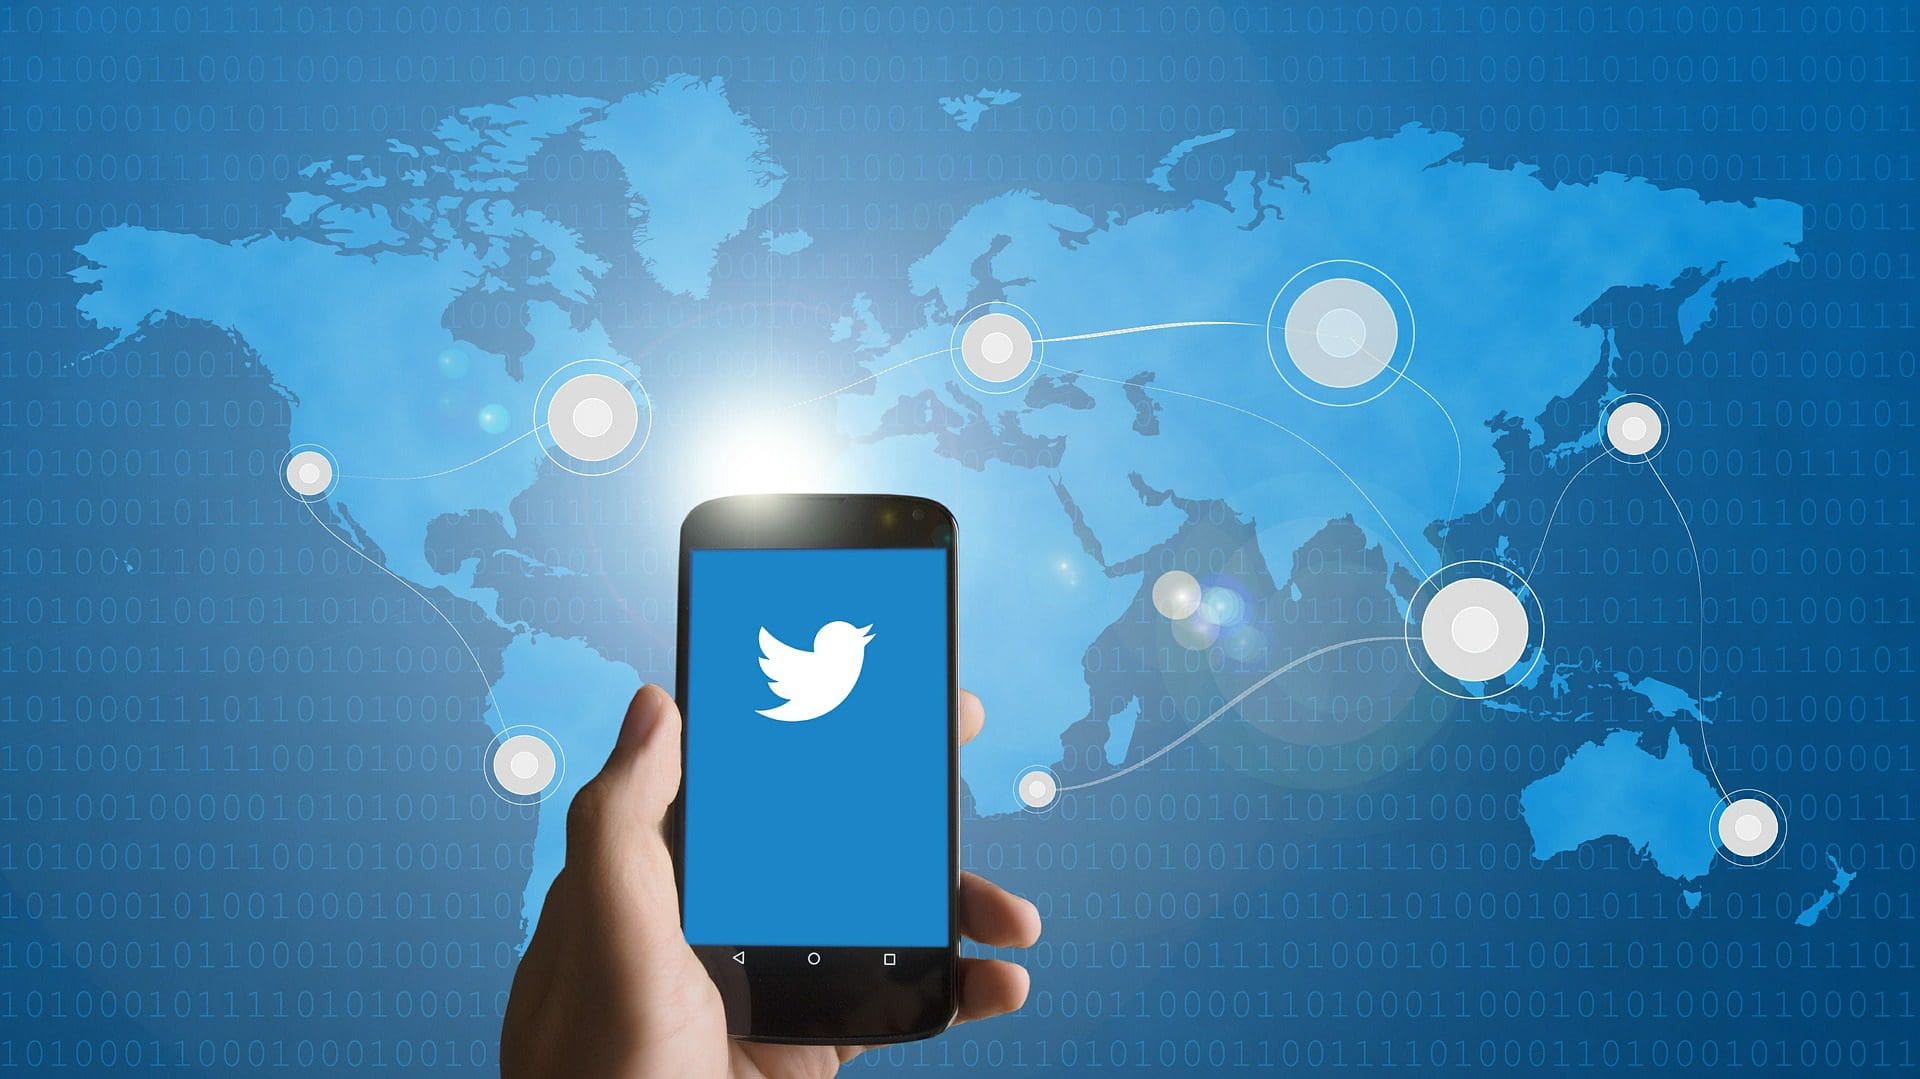 Twitter abiliterà la compravendita di NFT tramite tweet